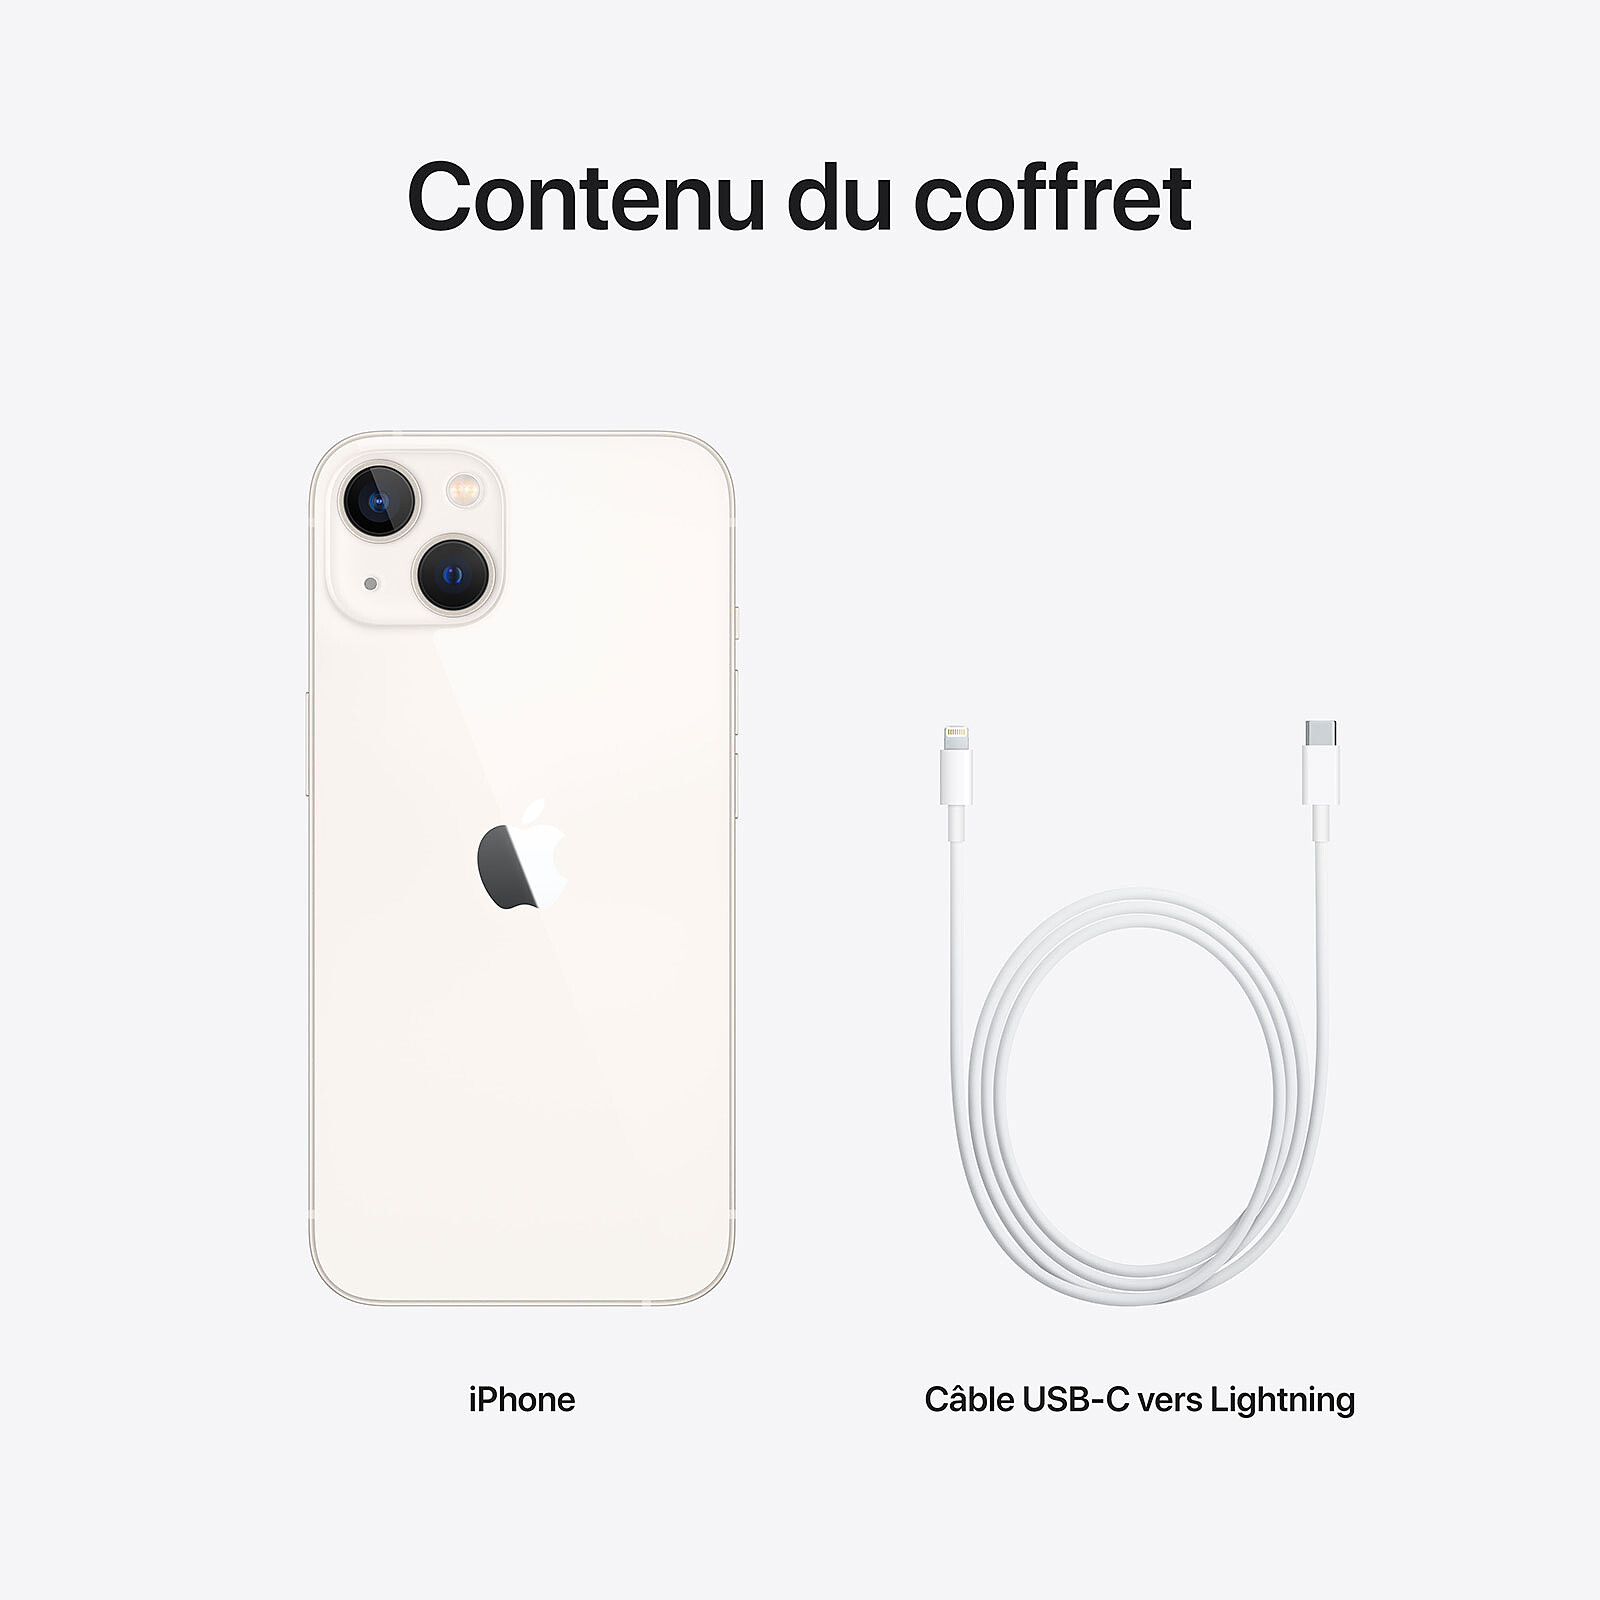 Concepto del iPhone 12 mini nos deja ver su nuevo diseño y colores